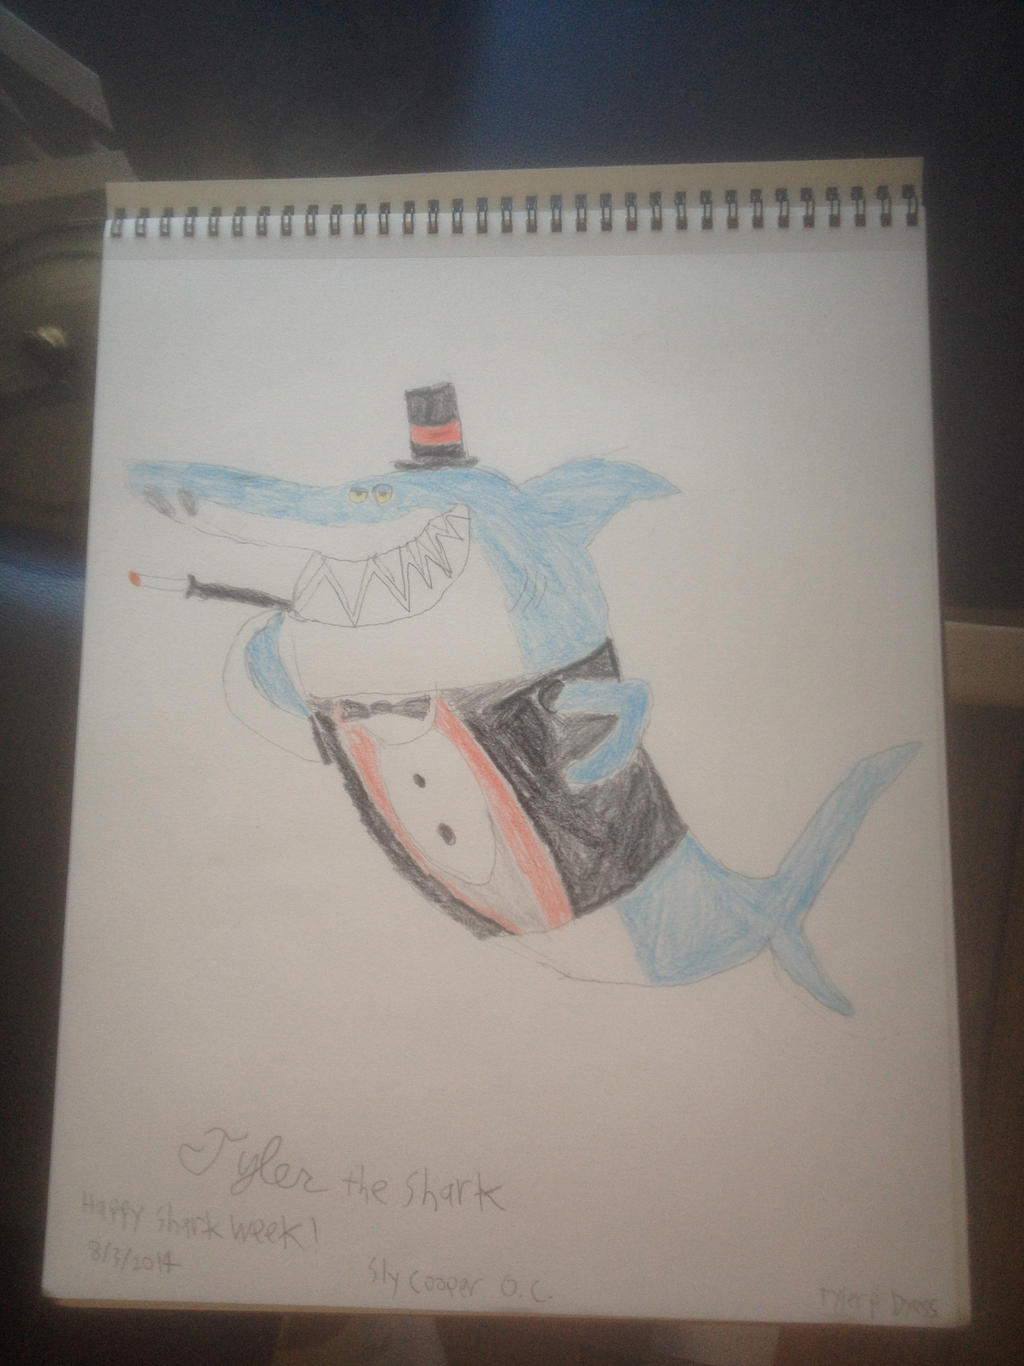 Sly Cooper OC Tyler the Shark (Shark Week 2014)